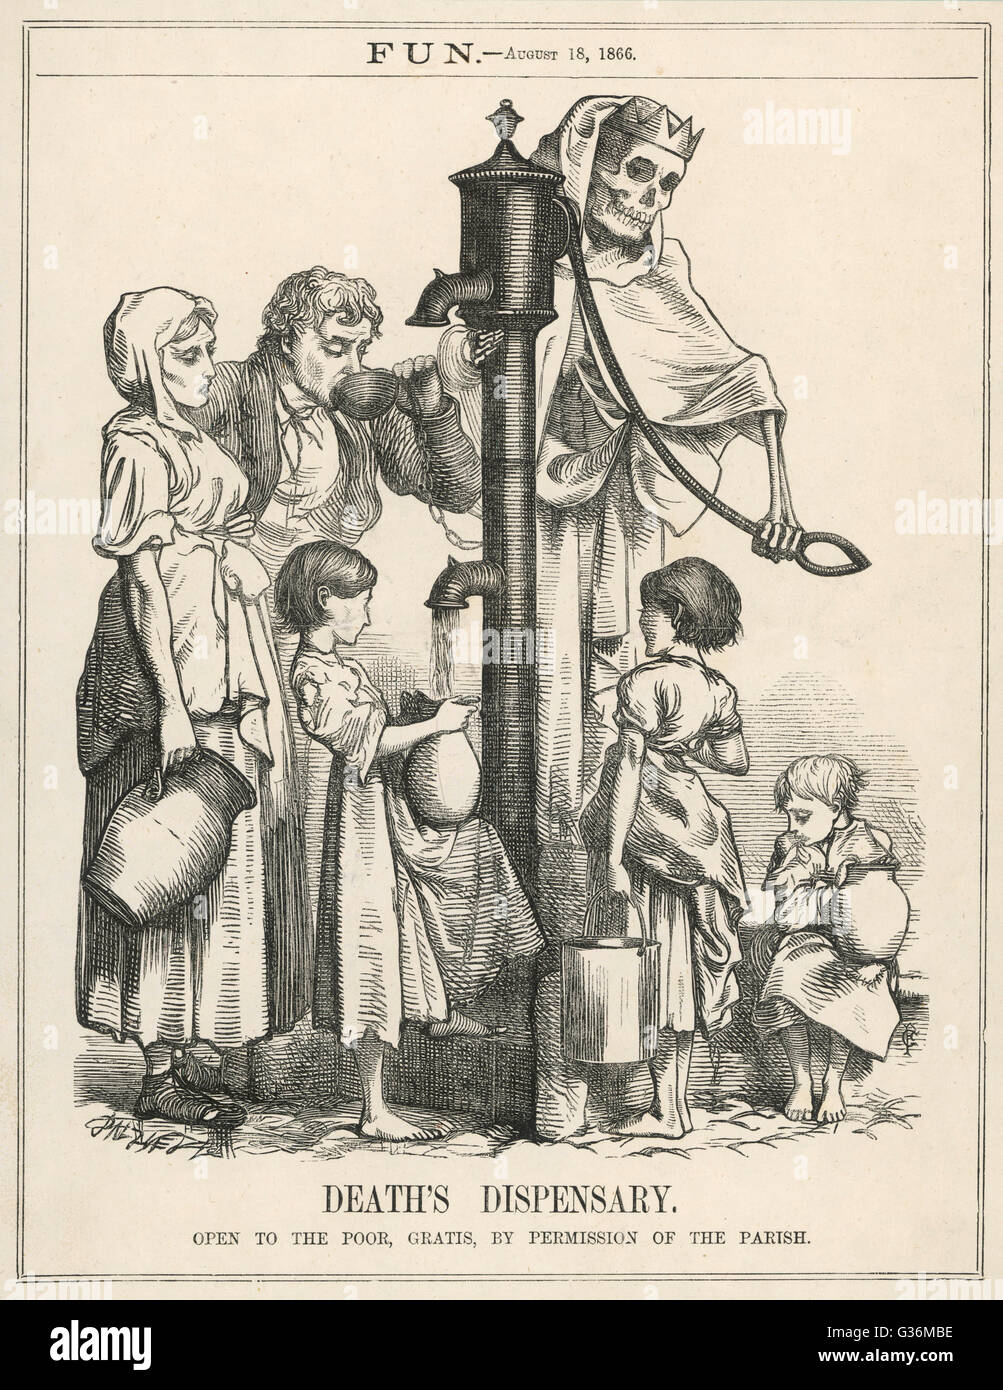 Spaß macht einen Kommentar auf kranke Wasserversorgung.         Datum: 18. August 1866 Stockfoto